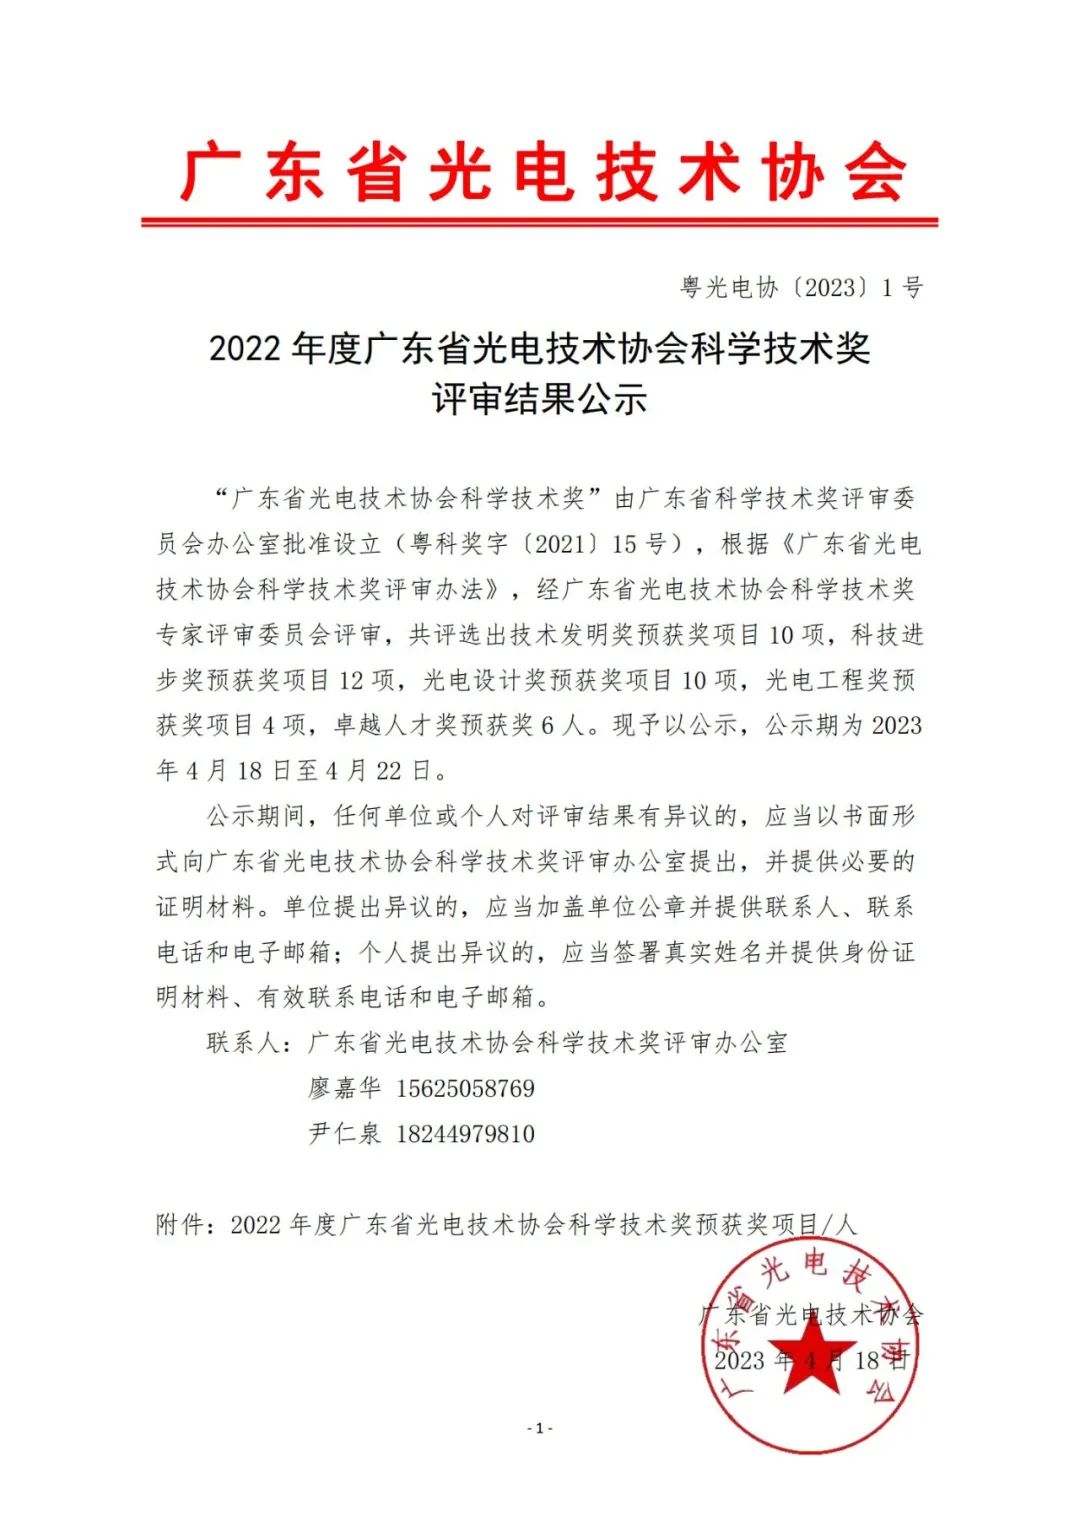 佛山照明荣获2022年度广东省光电技术协会科学技术奖二等奖